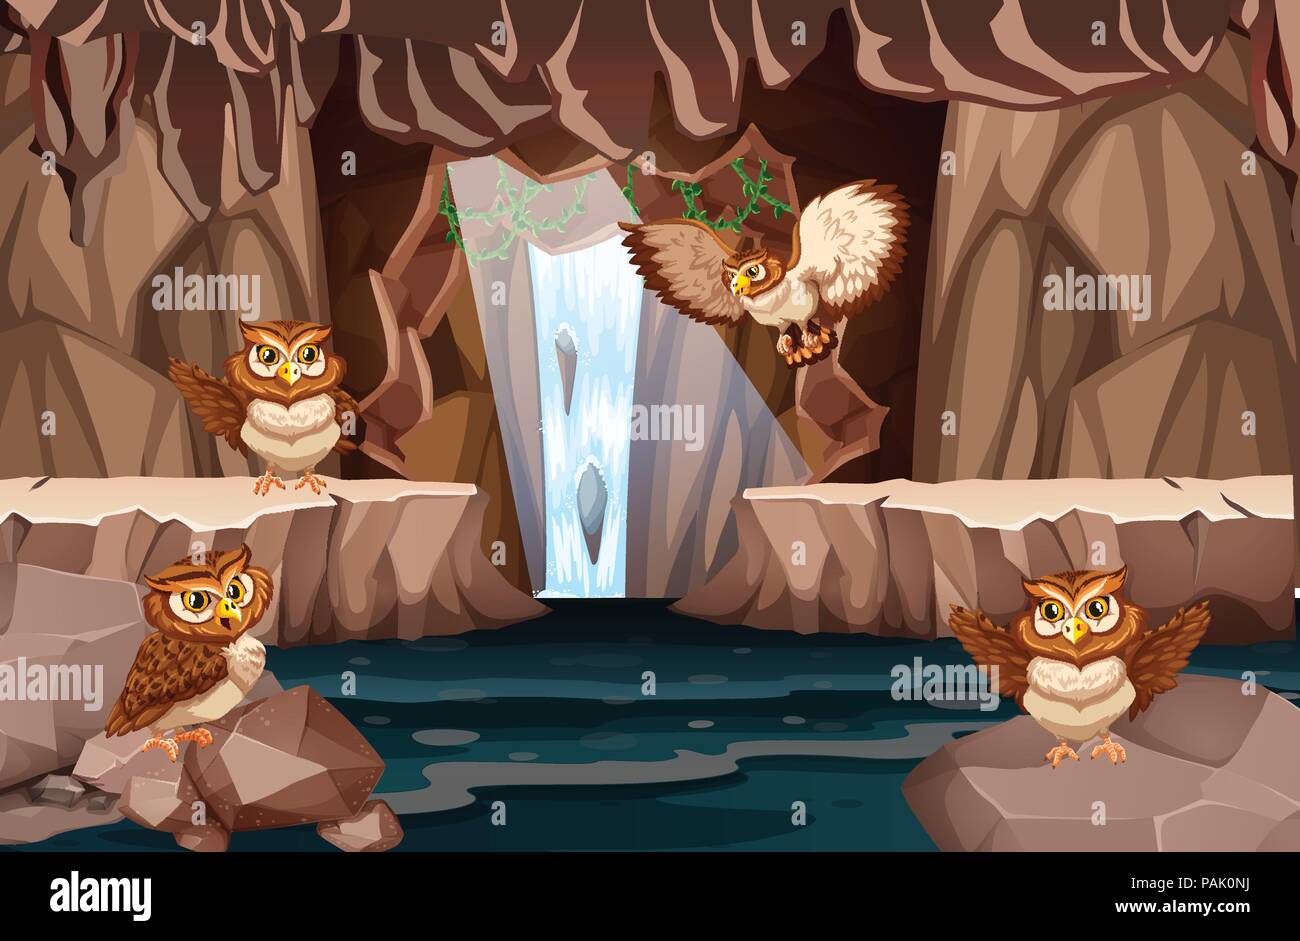 Owl vivant dans la grotte de l'eau illustration Illustration de Vecteur